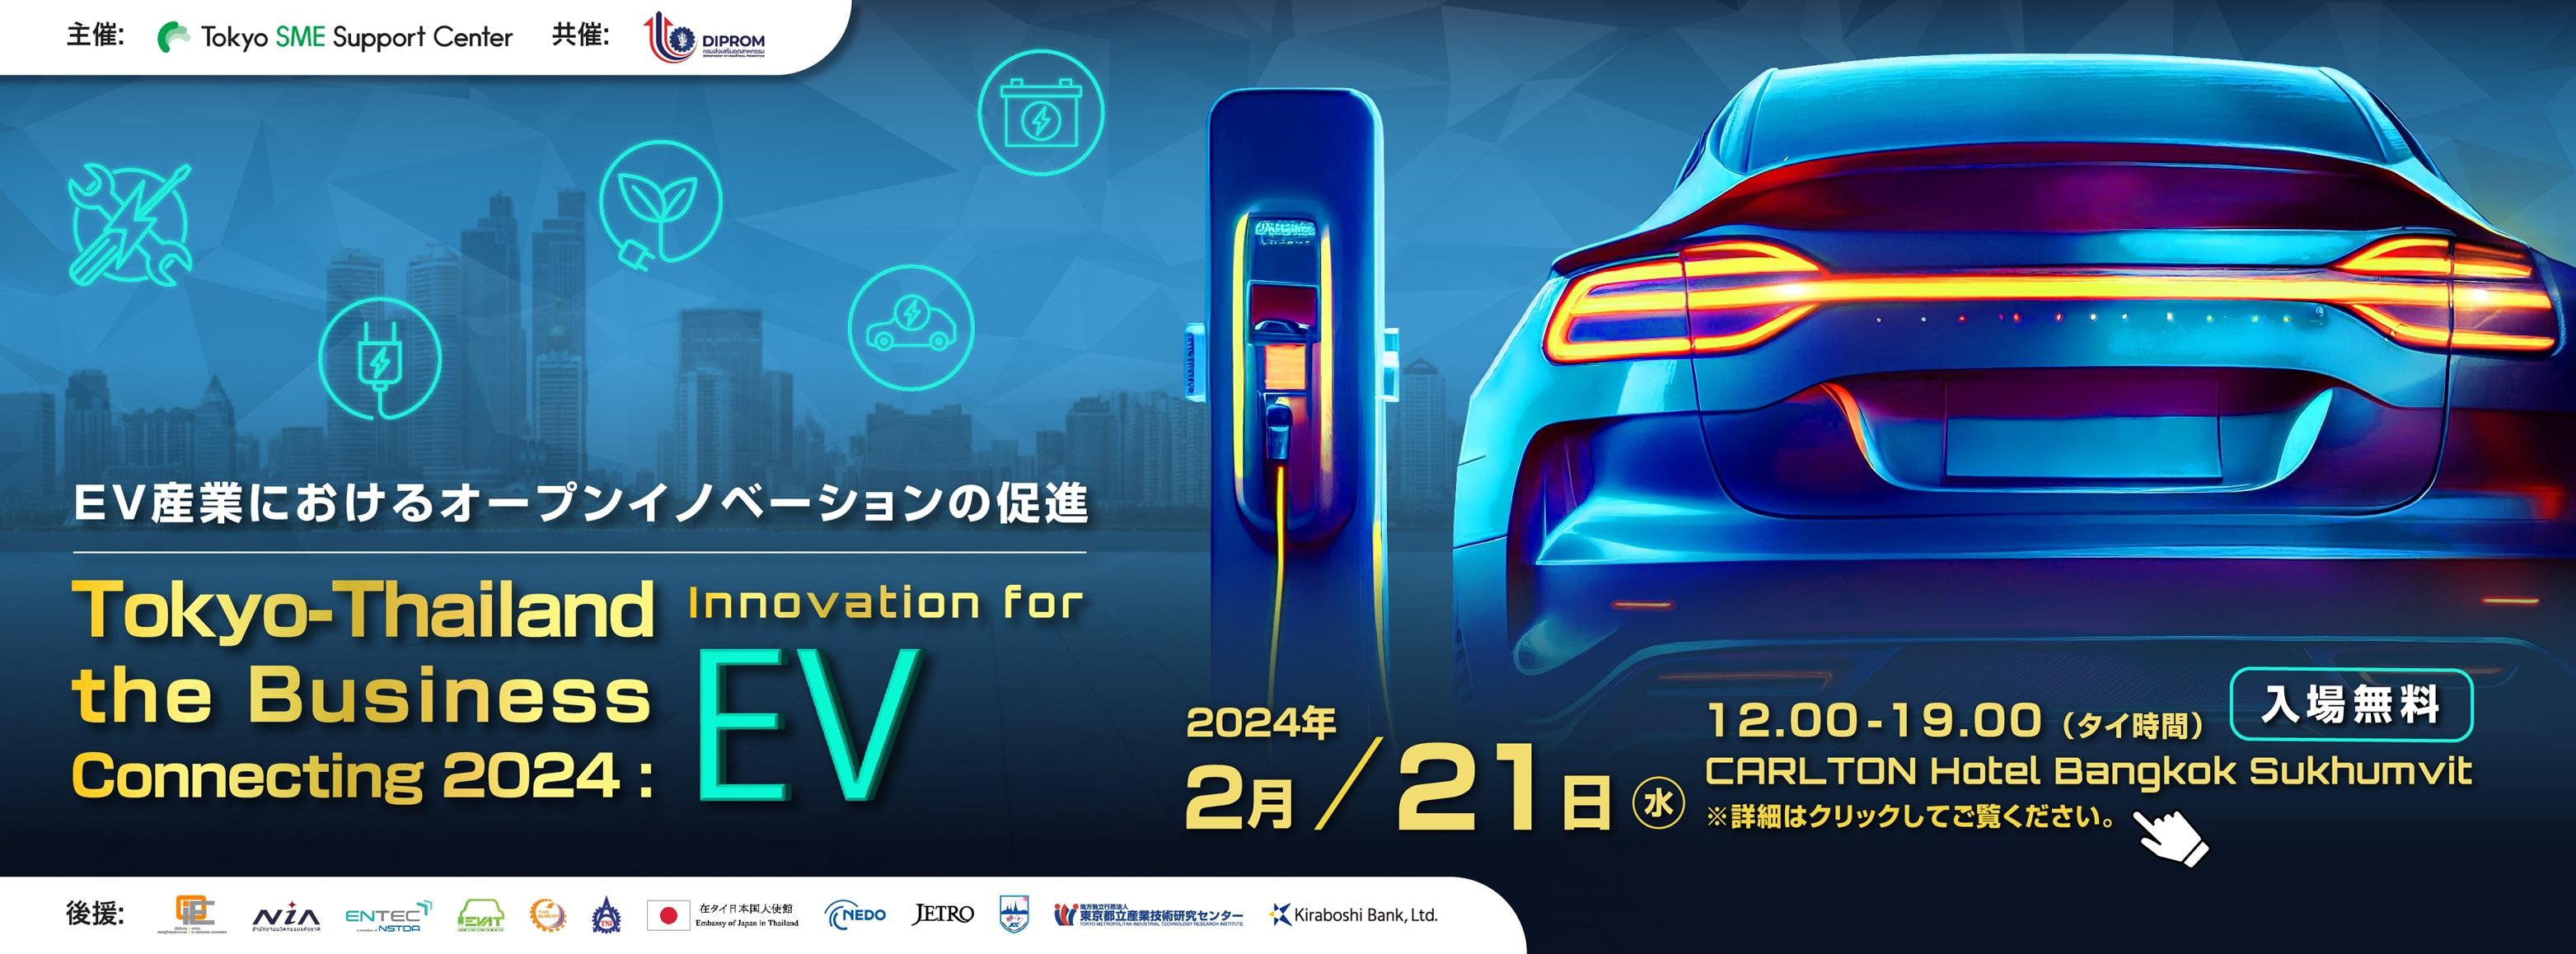 240111_Tokyo SME Innovation for EV_ LP banner no fti.jpg